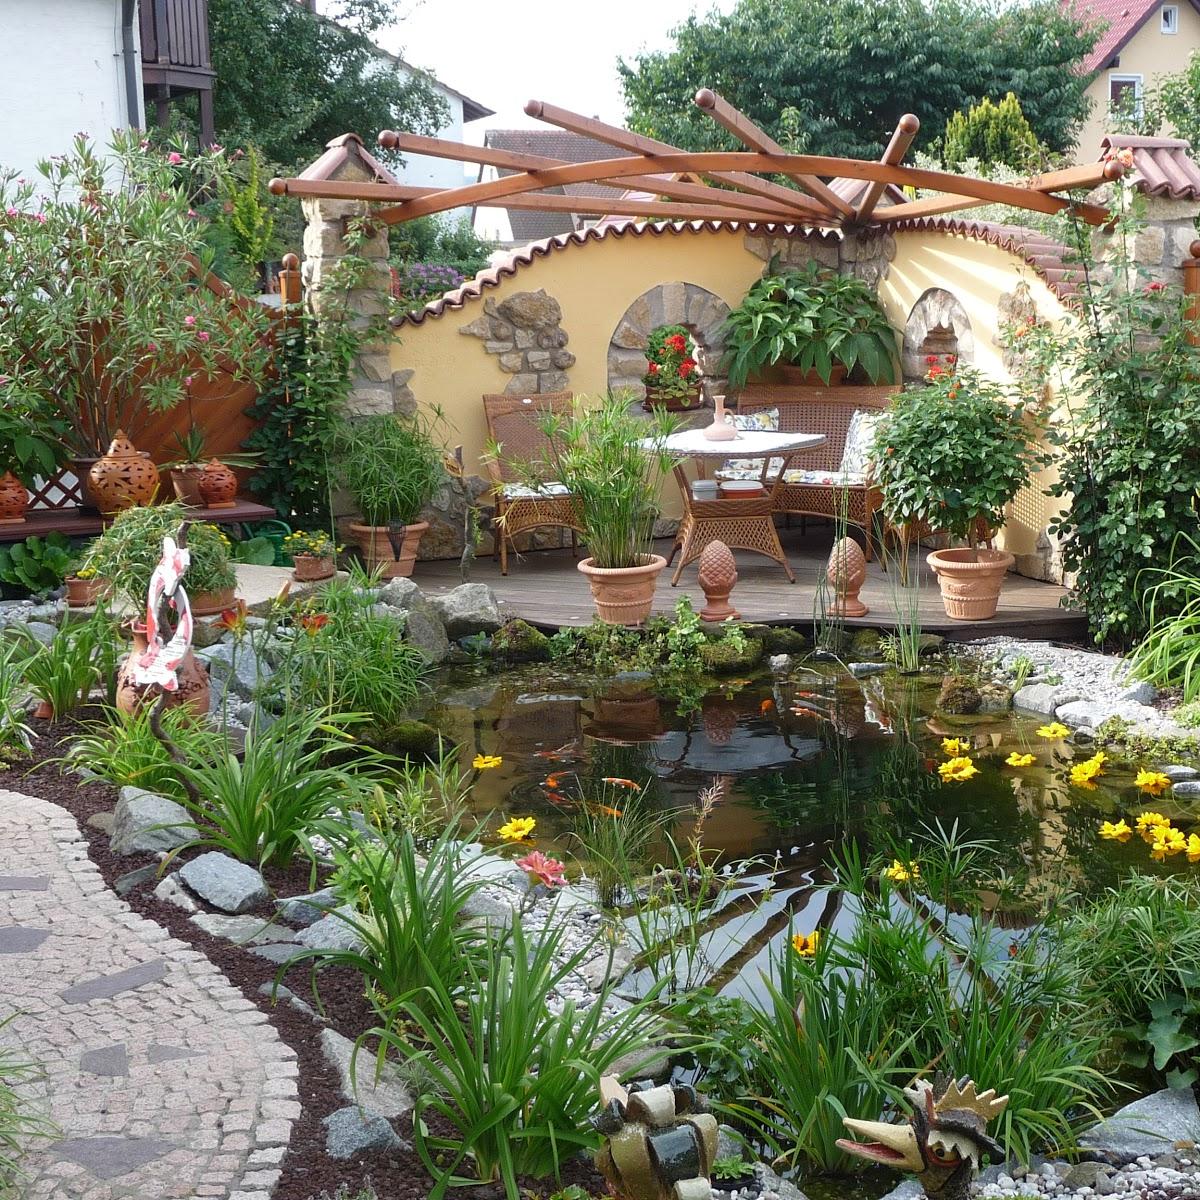 Restaurant "Ferienwohnung  Wassergartenparadies " in Harsdorf